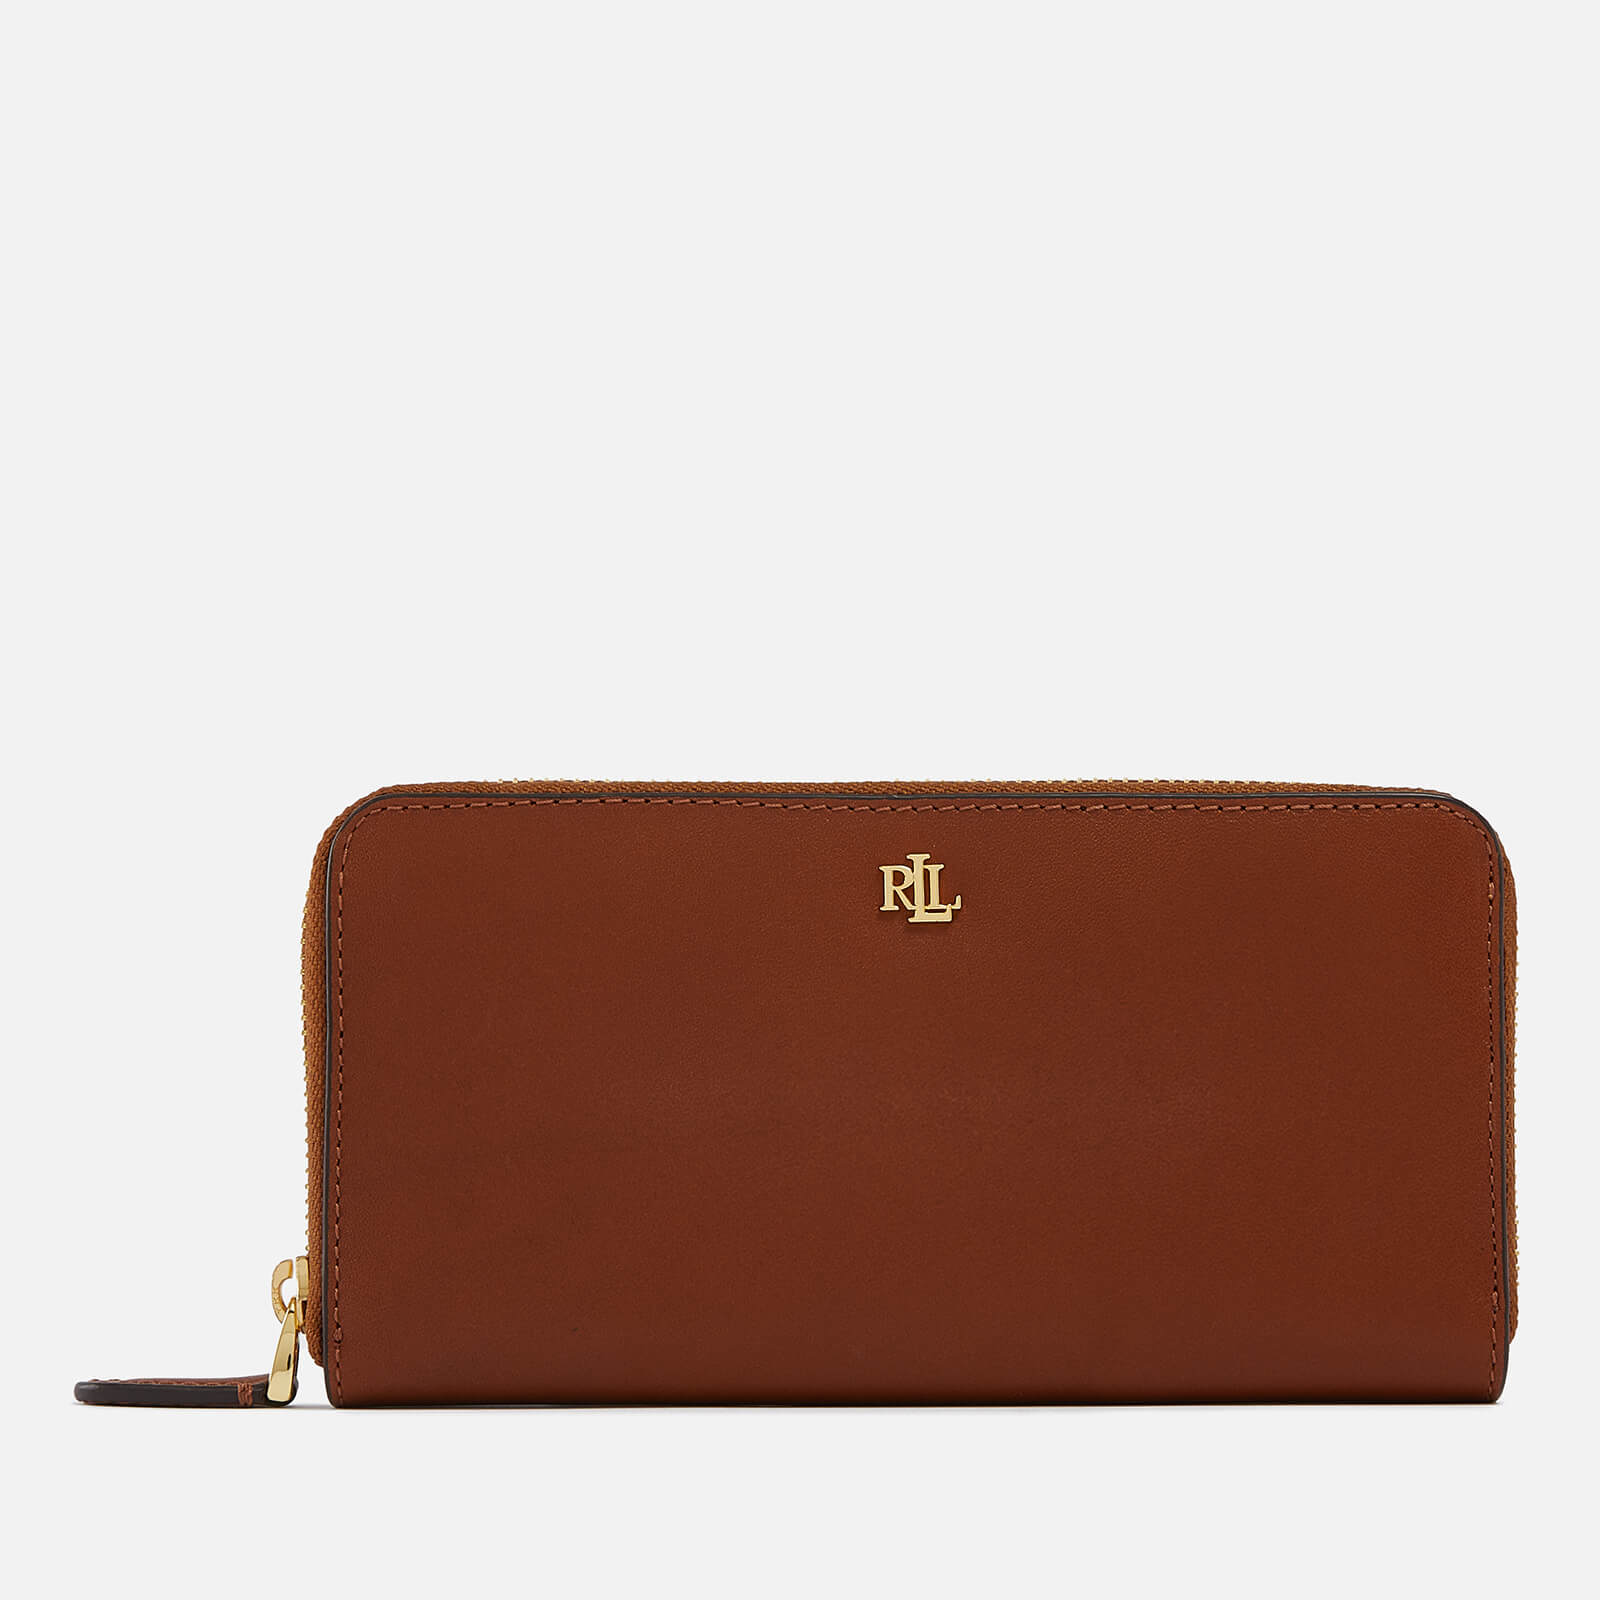 Lauren Ralph Lauren Leather Wallet